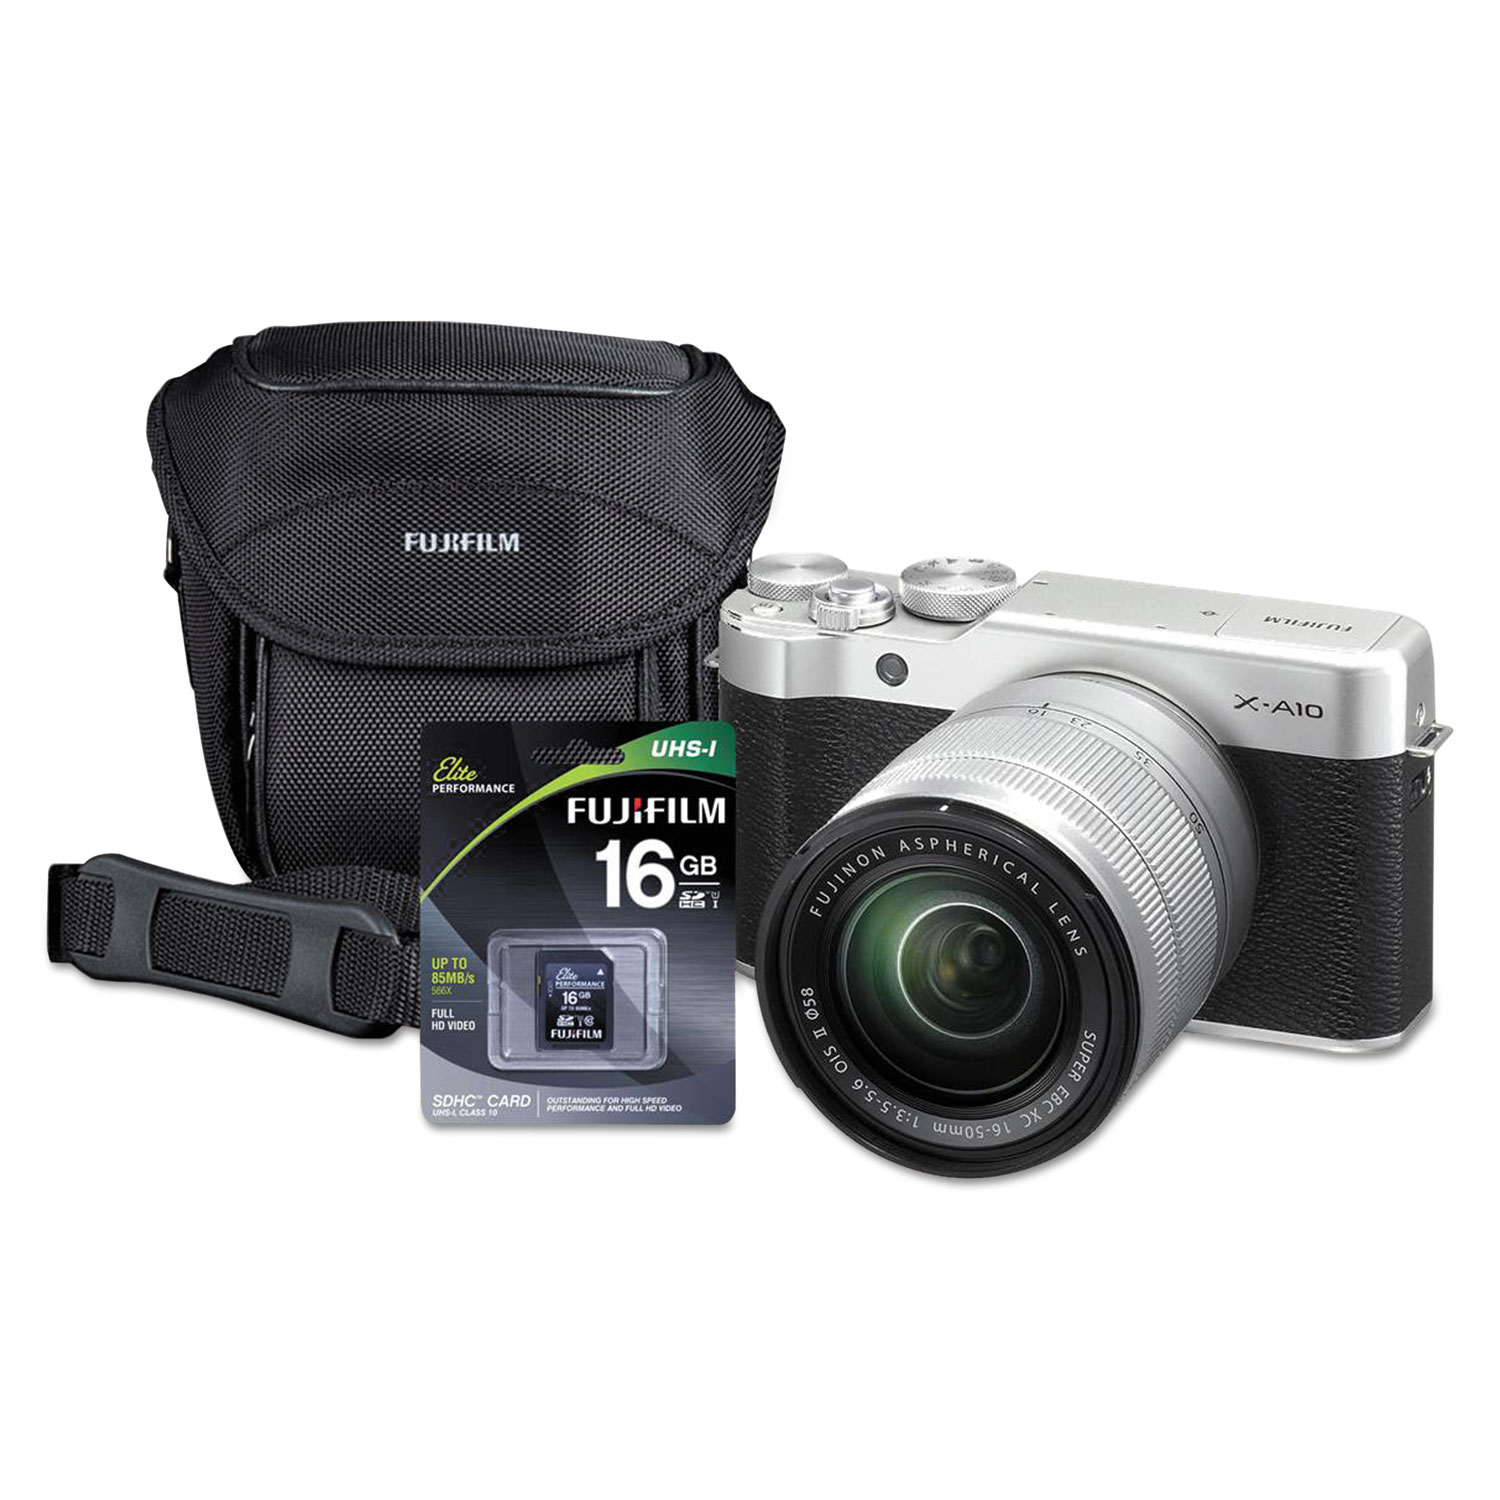 X-A10 Compact Interchangeable Lens Camera Bundle, 16 MP, Black